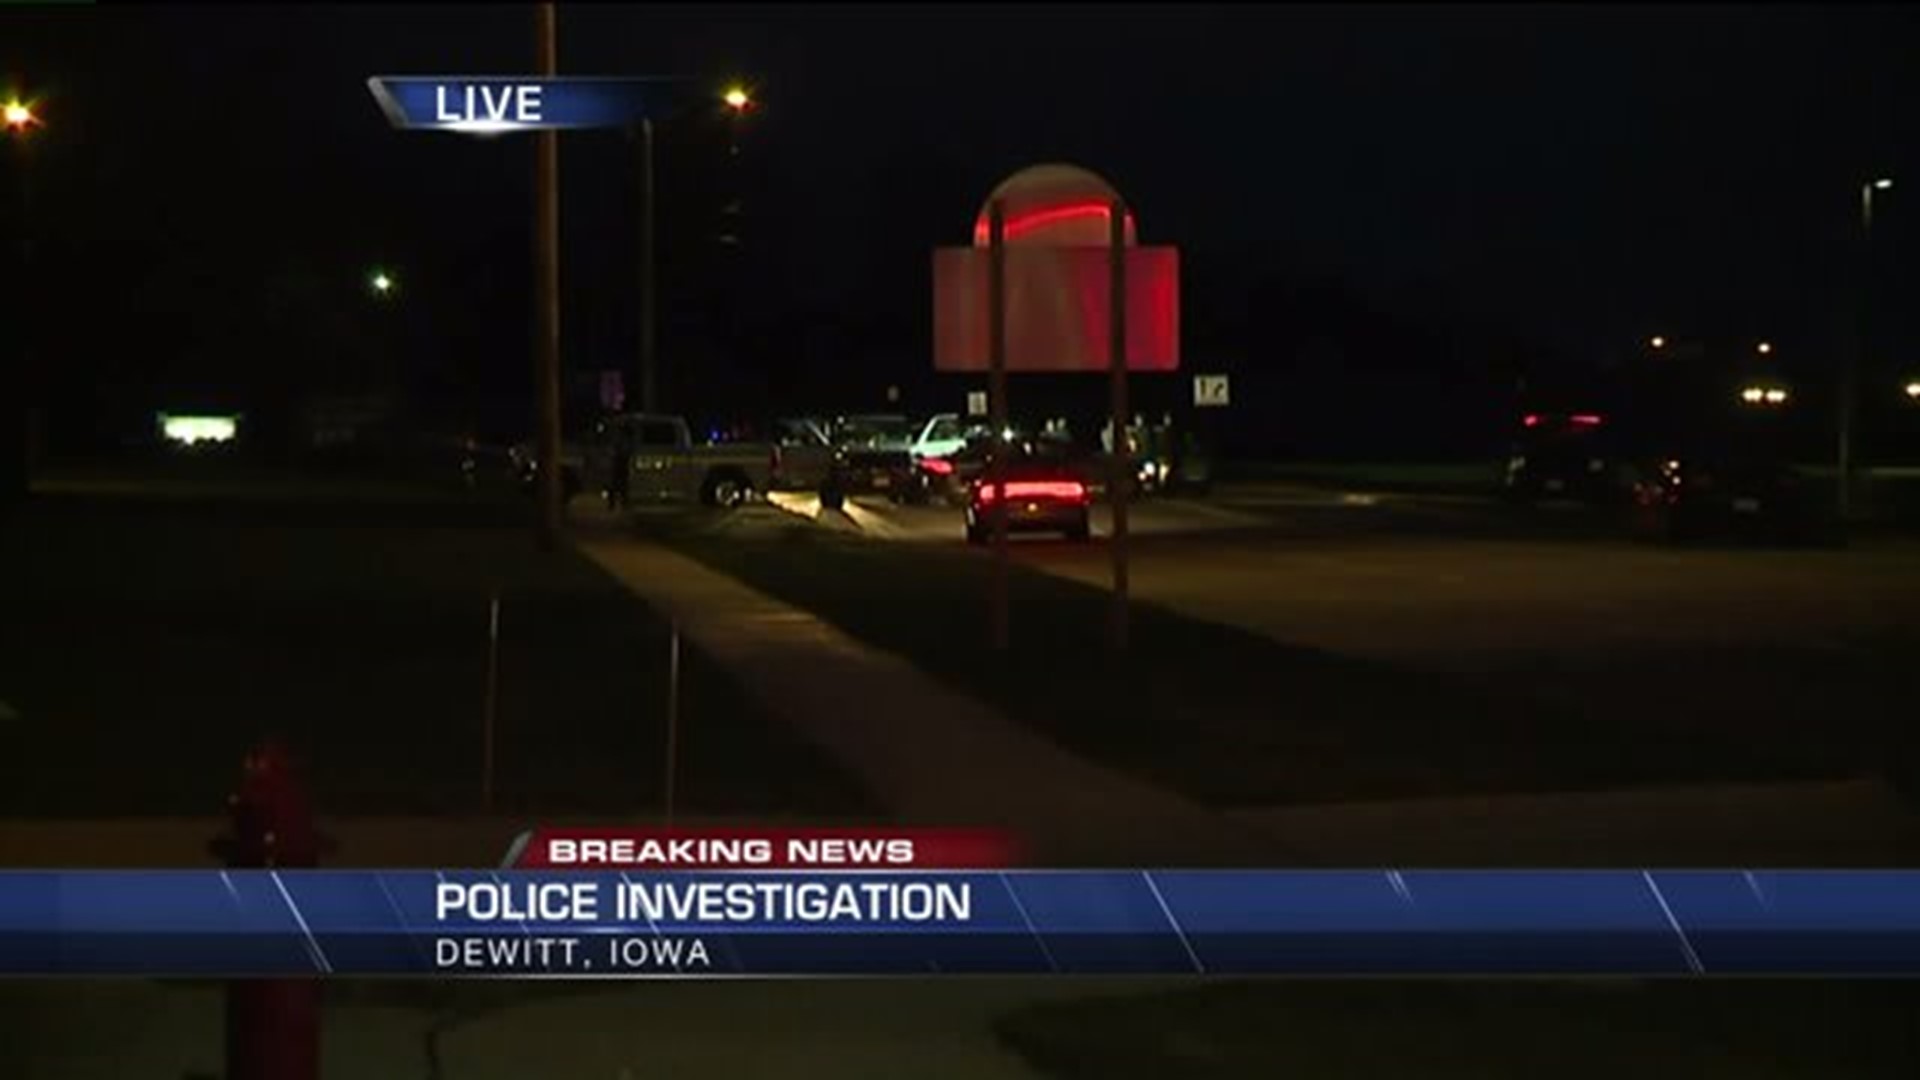 Standoff situation in DeWitt, Iowa